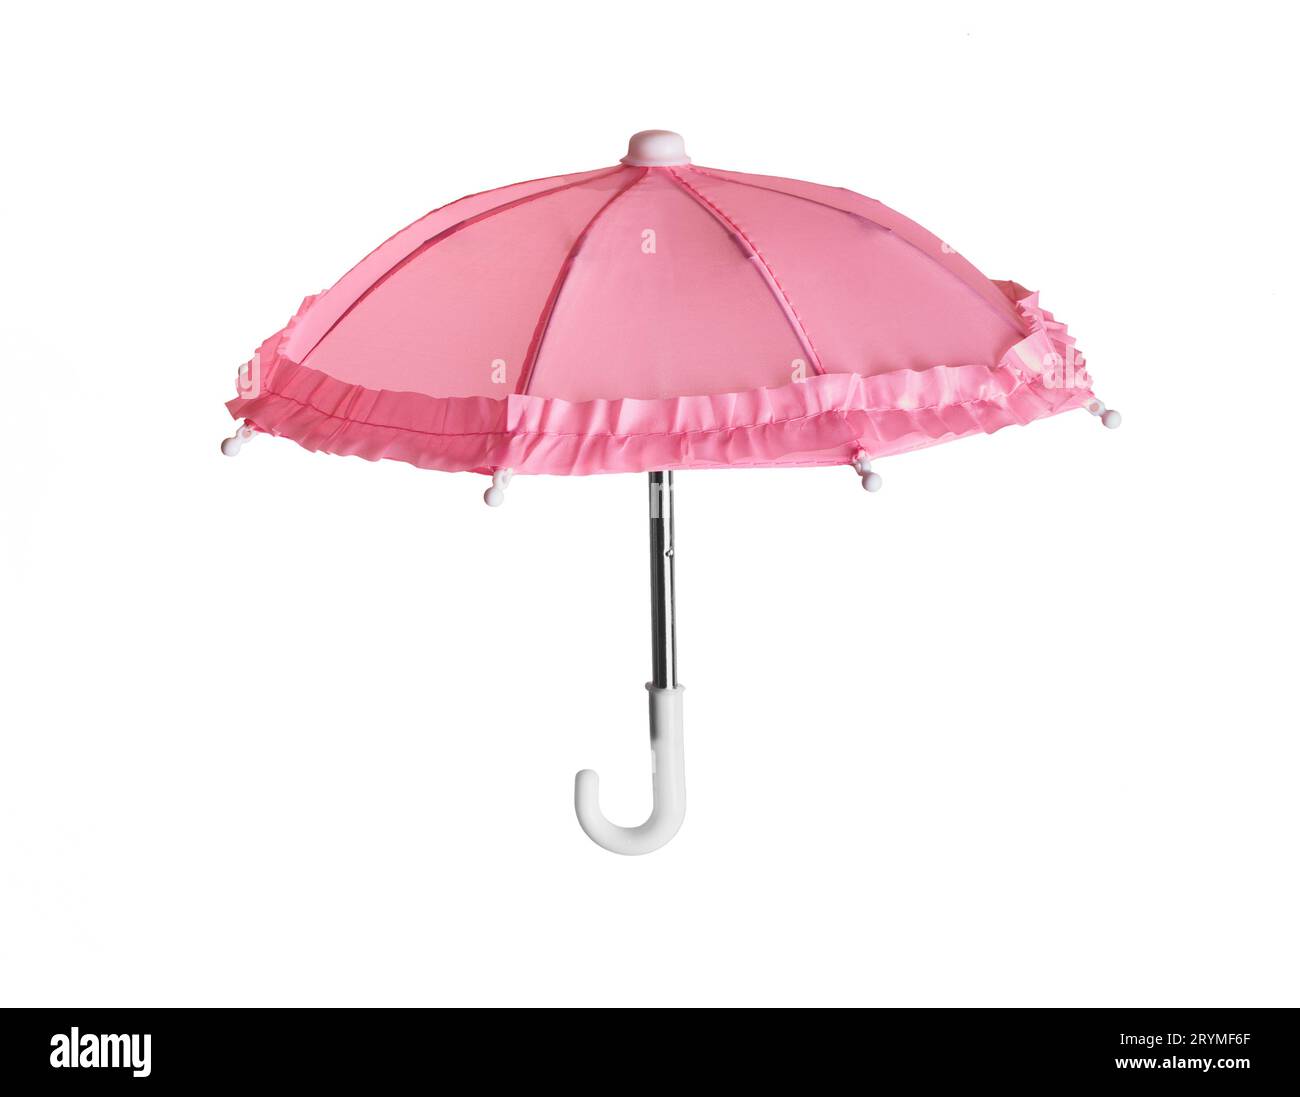 Parapluie romantique jouet rose avec volants isolé sur fond blanc Banque D'Images